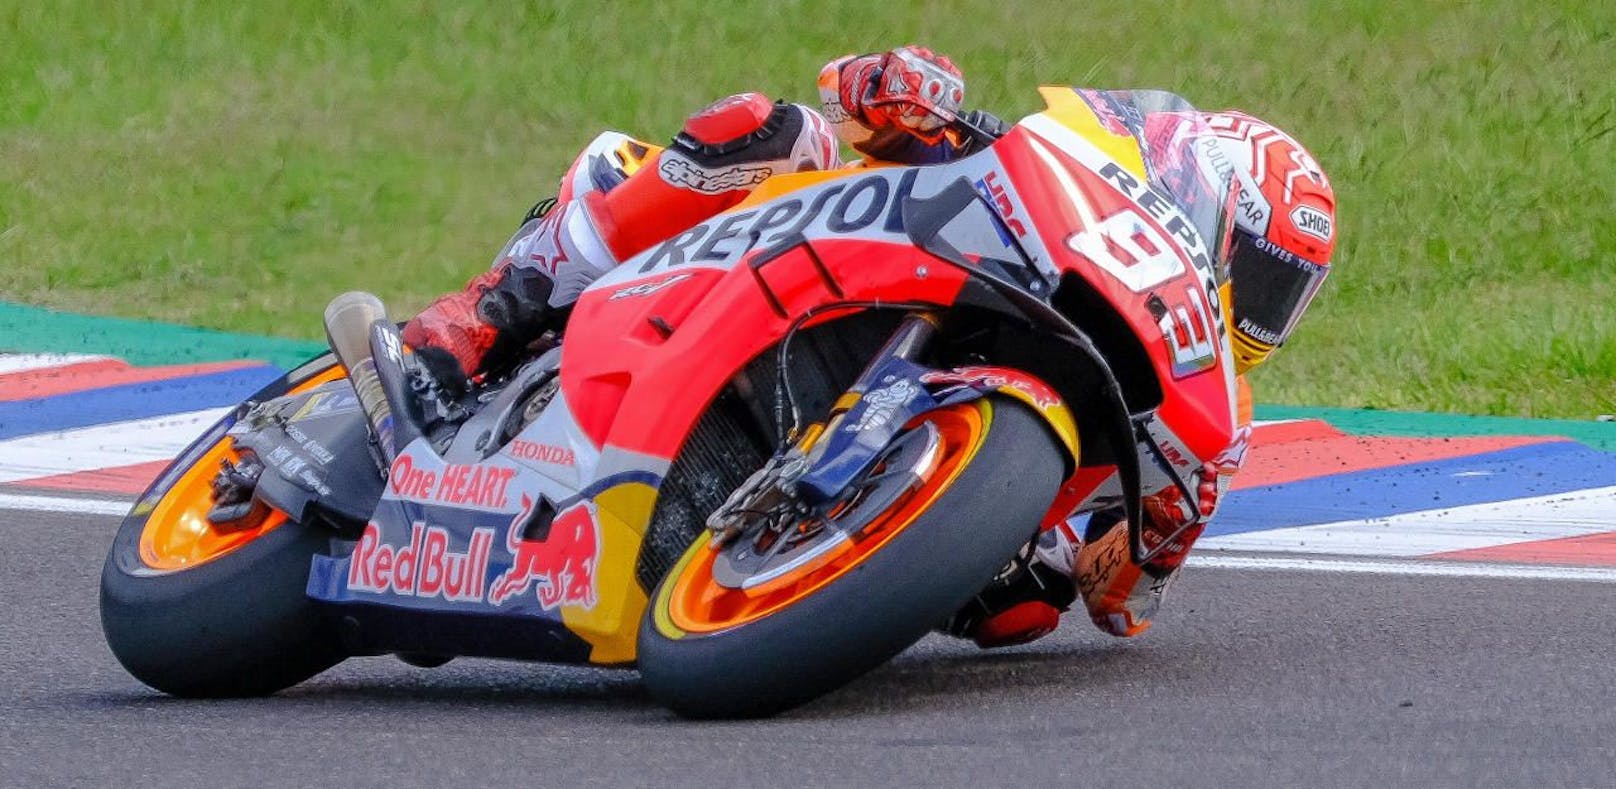 MotoGP-Star Marquez feiert ersten Saisonsieg